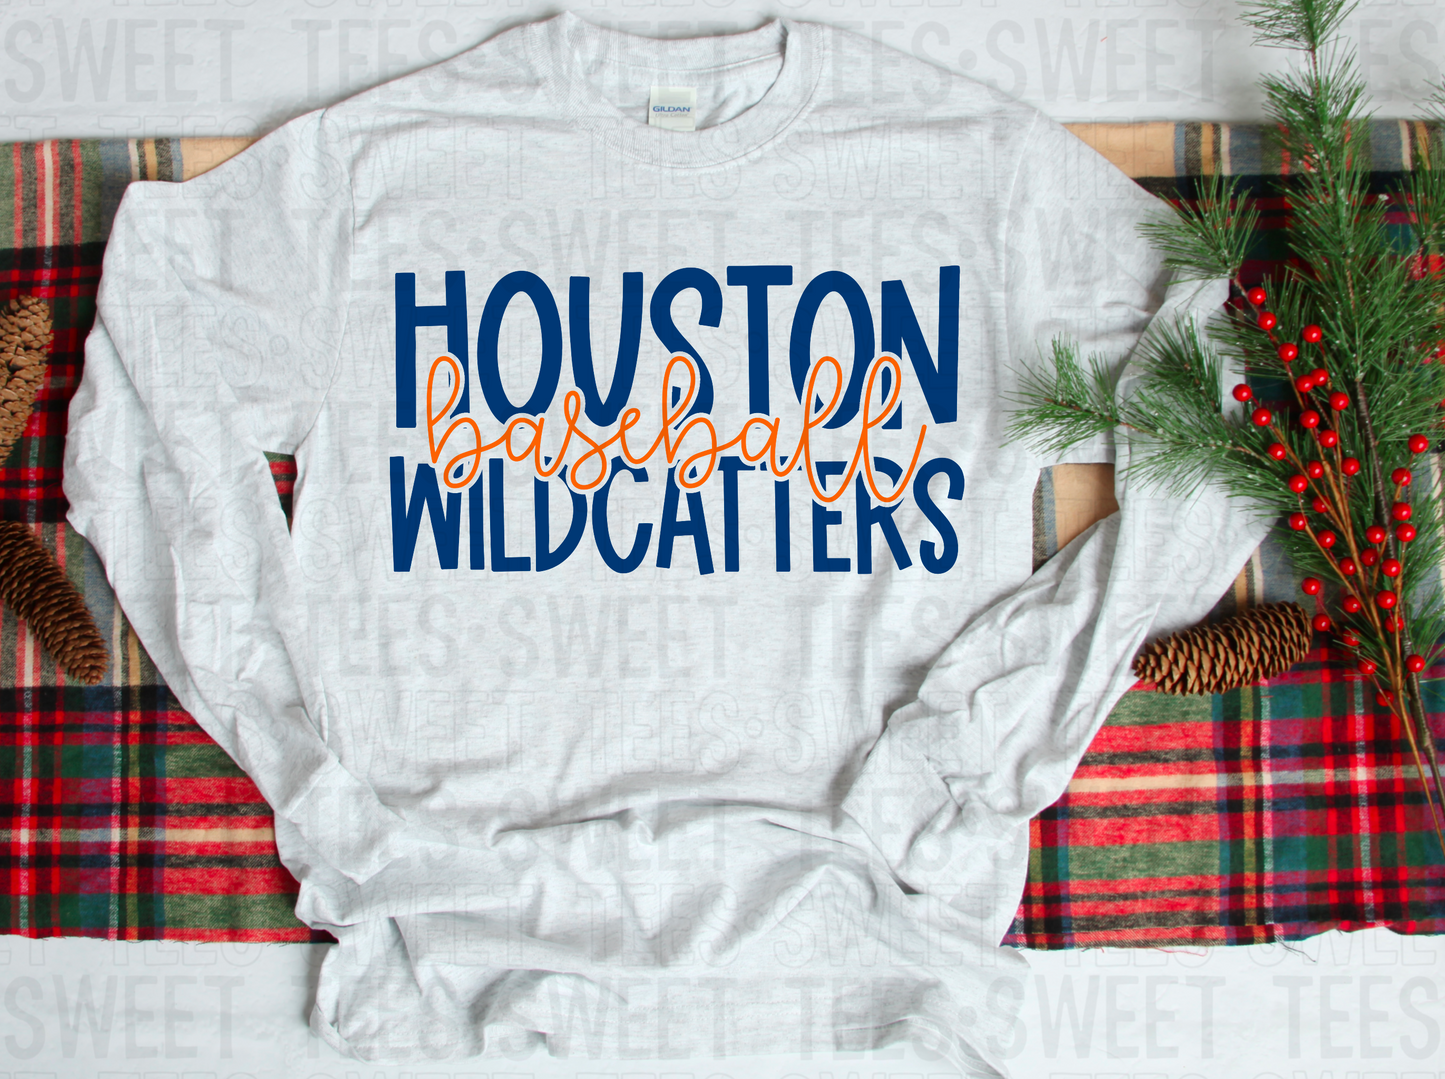 Houston Wildcatters tee